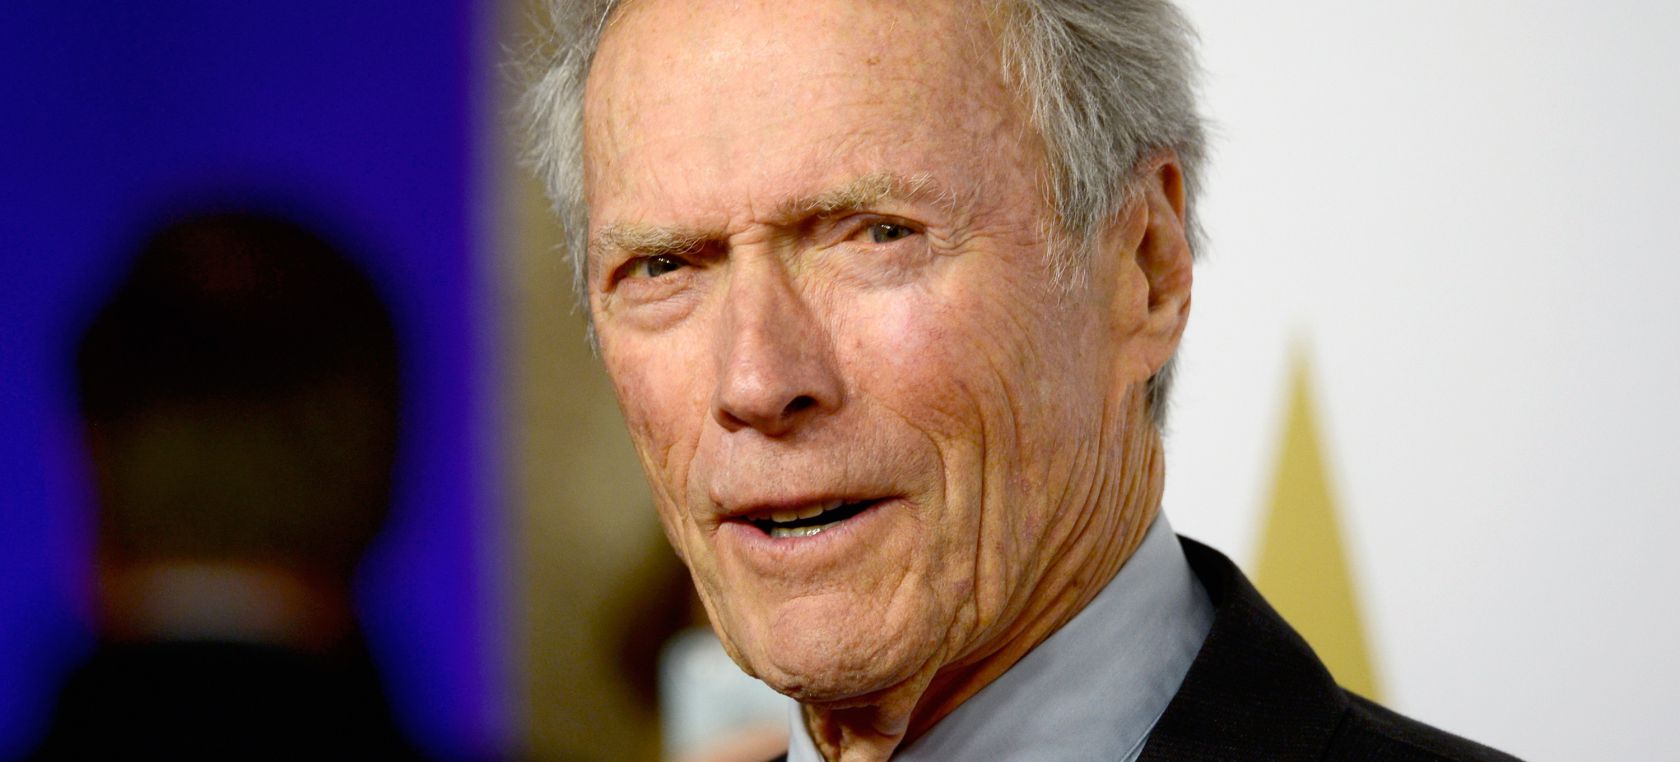 Clint Eastwood regresa a los cines a los 91 años para su nueva película "Cry Macho"